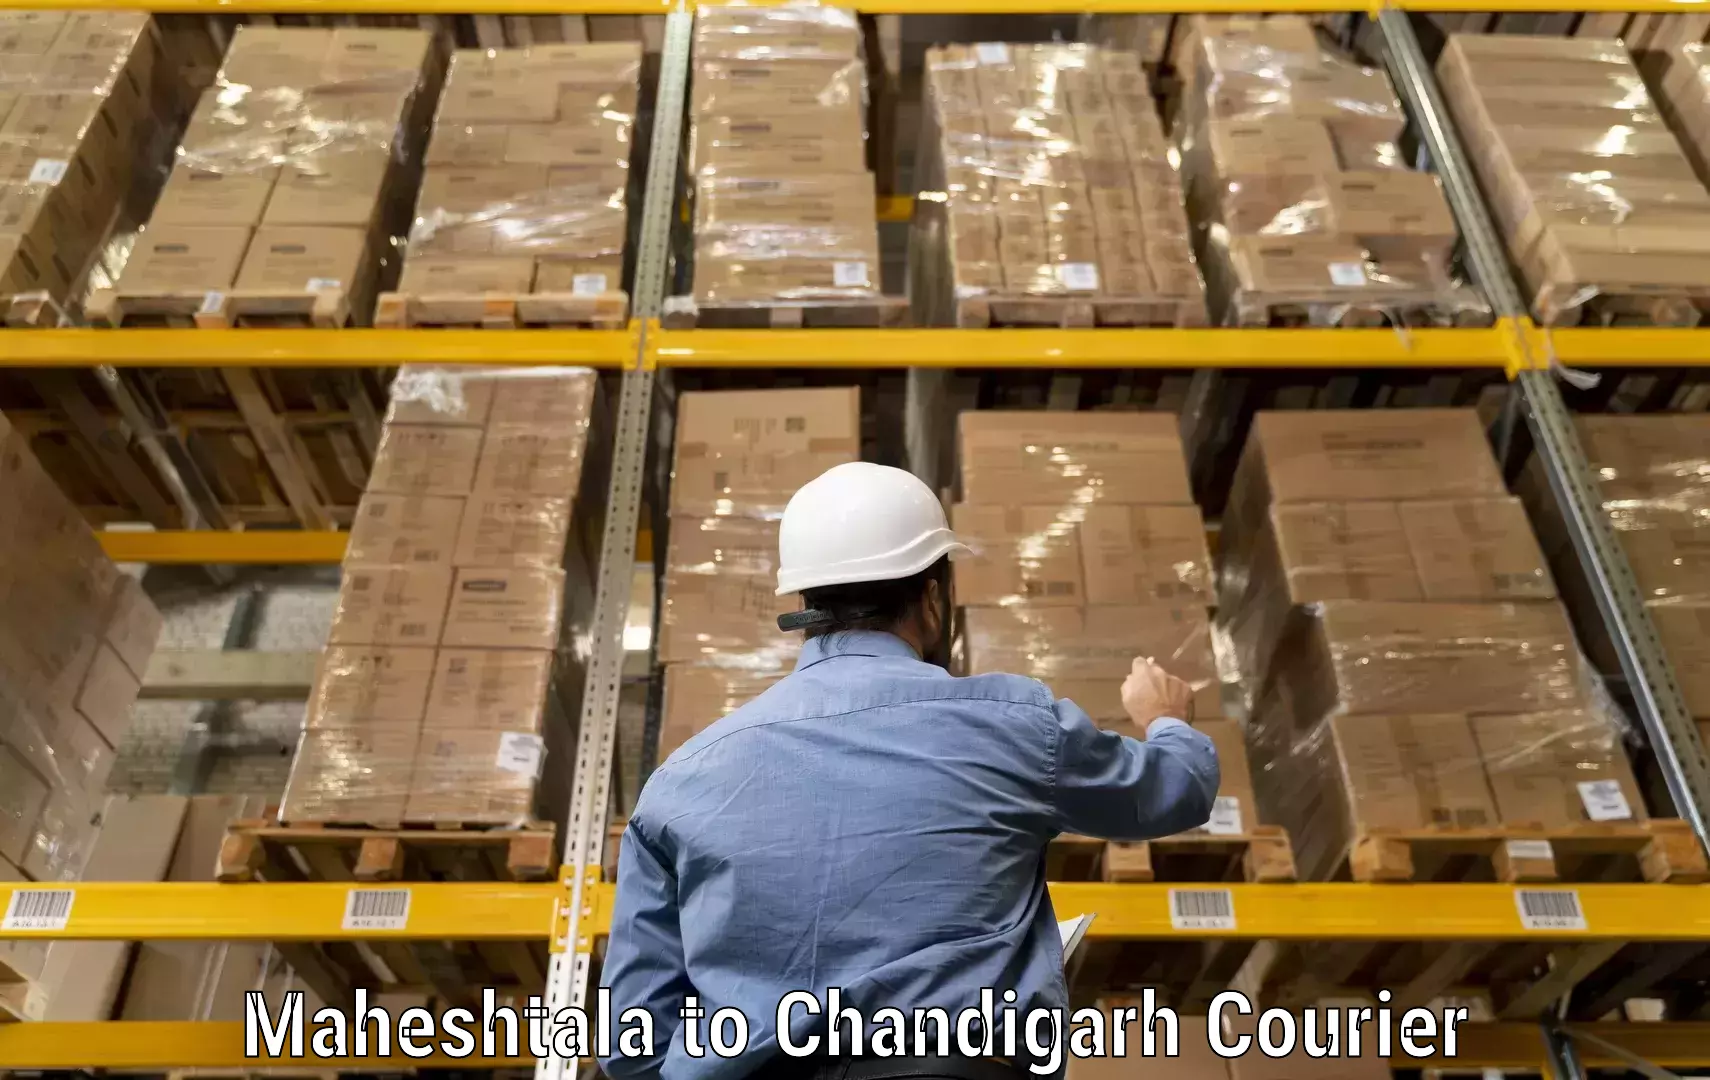 Courier insurance Maheshtala to Chandigarh